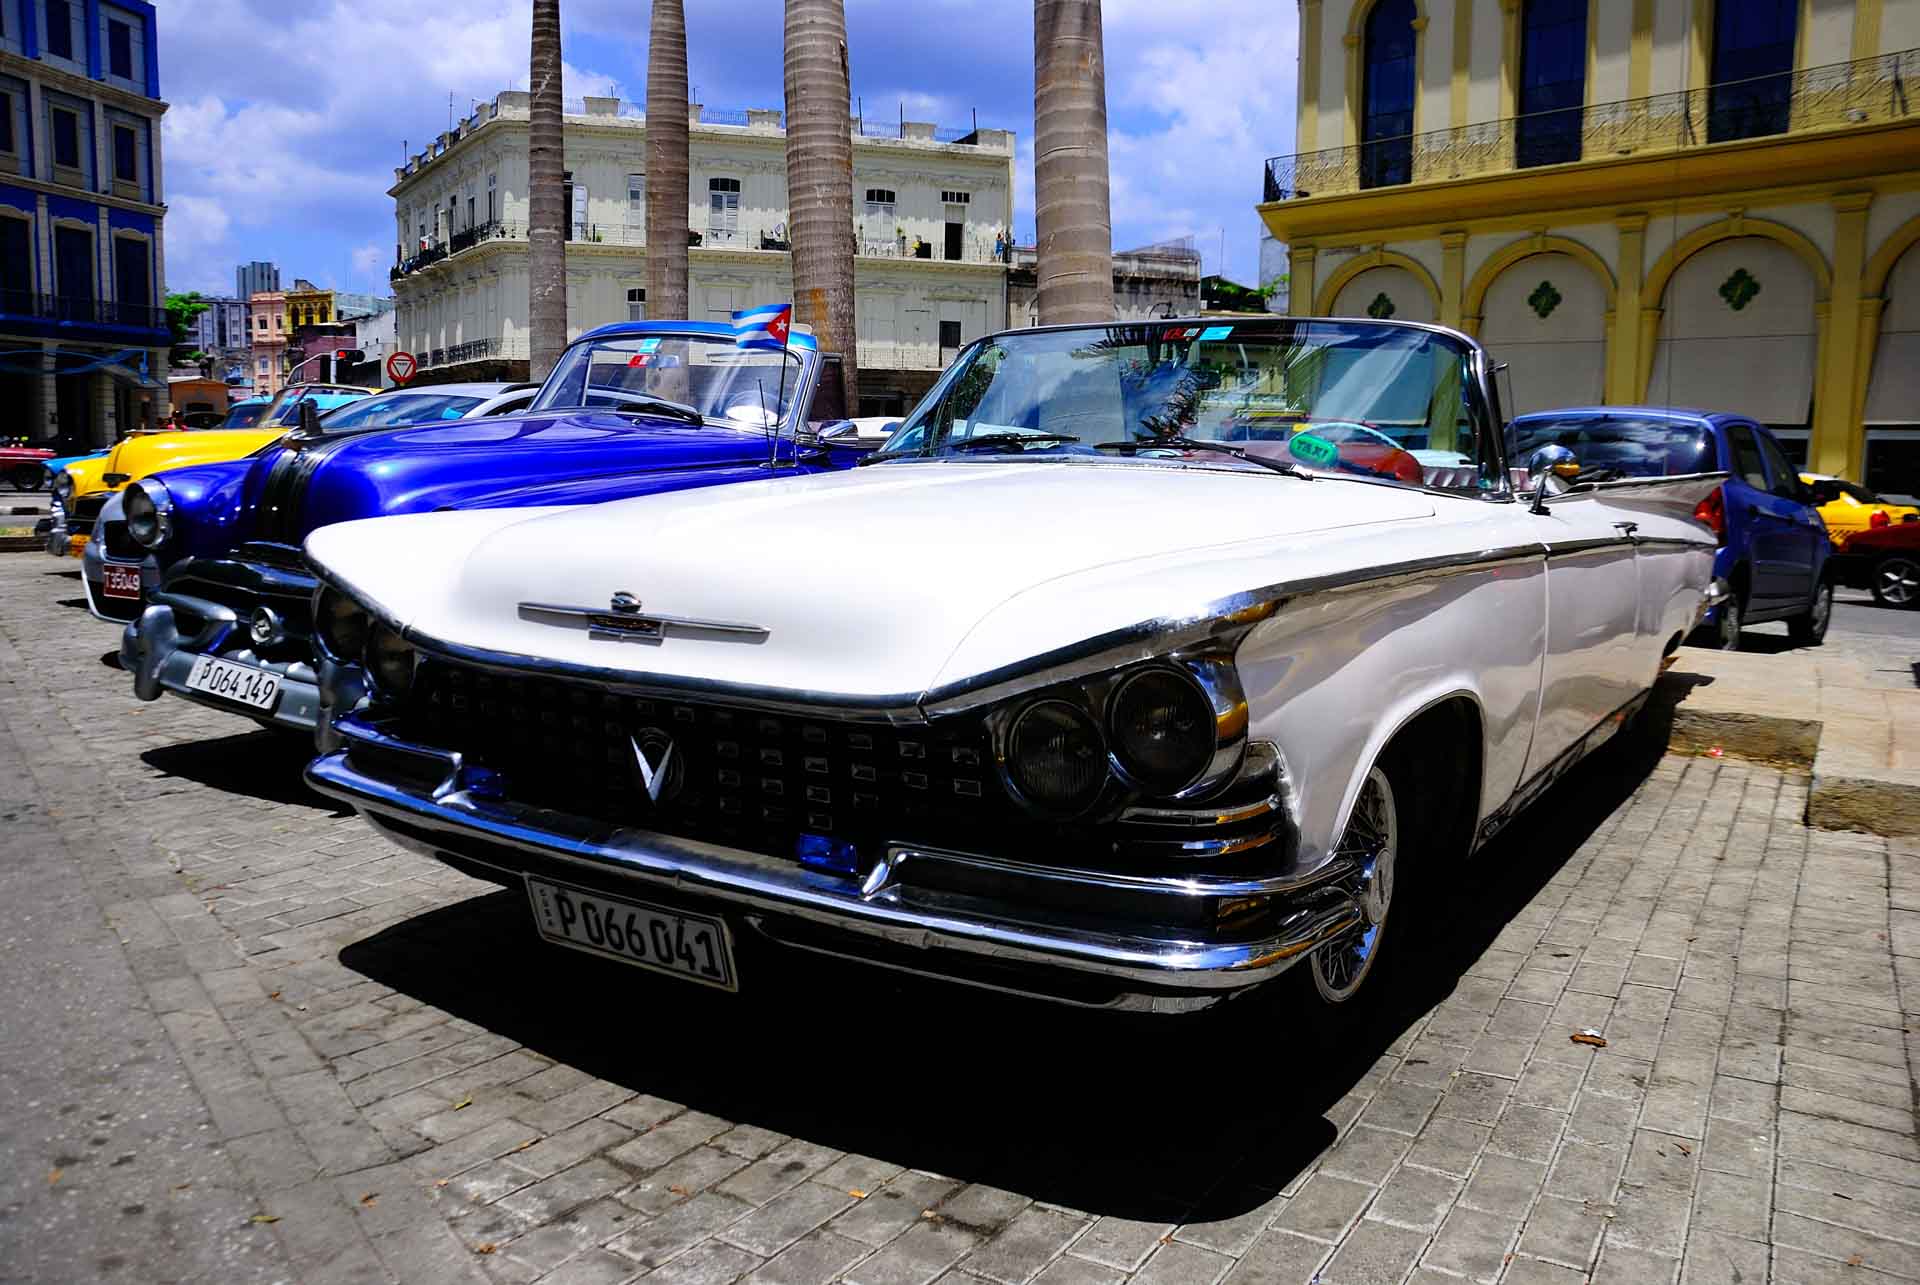 Havana Cuba Vintage Car 3, havana, cuba, pescart, photo blog, travel blog, blog, photo travel blog, enrico pescantini, pescantini